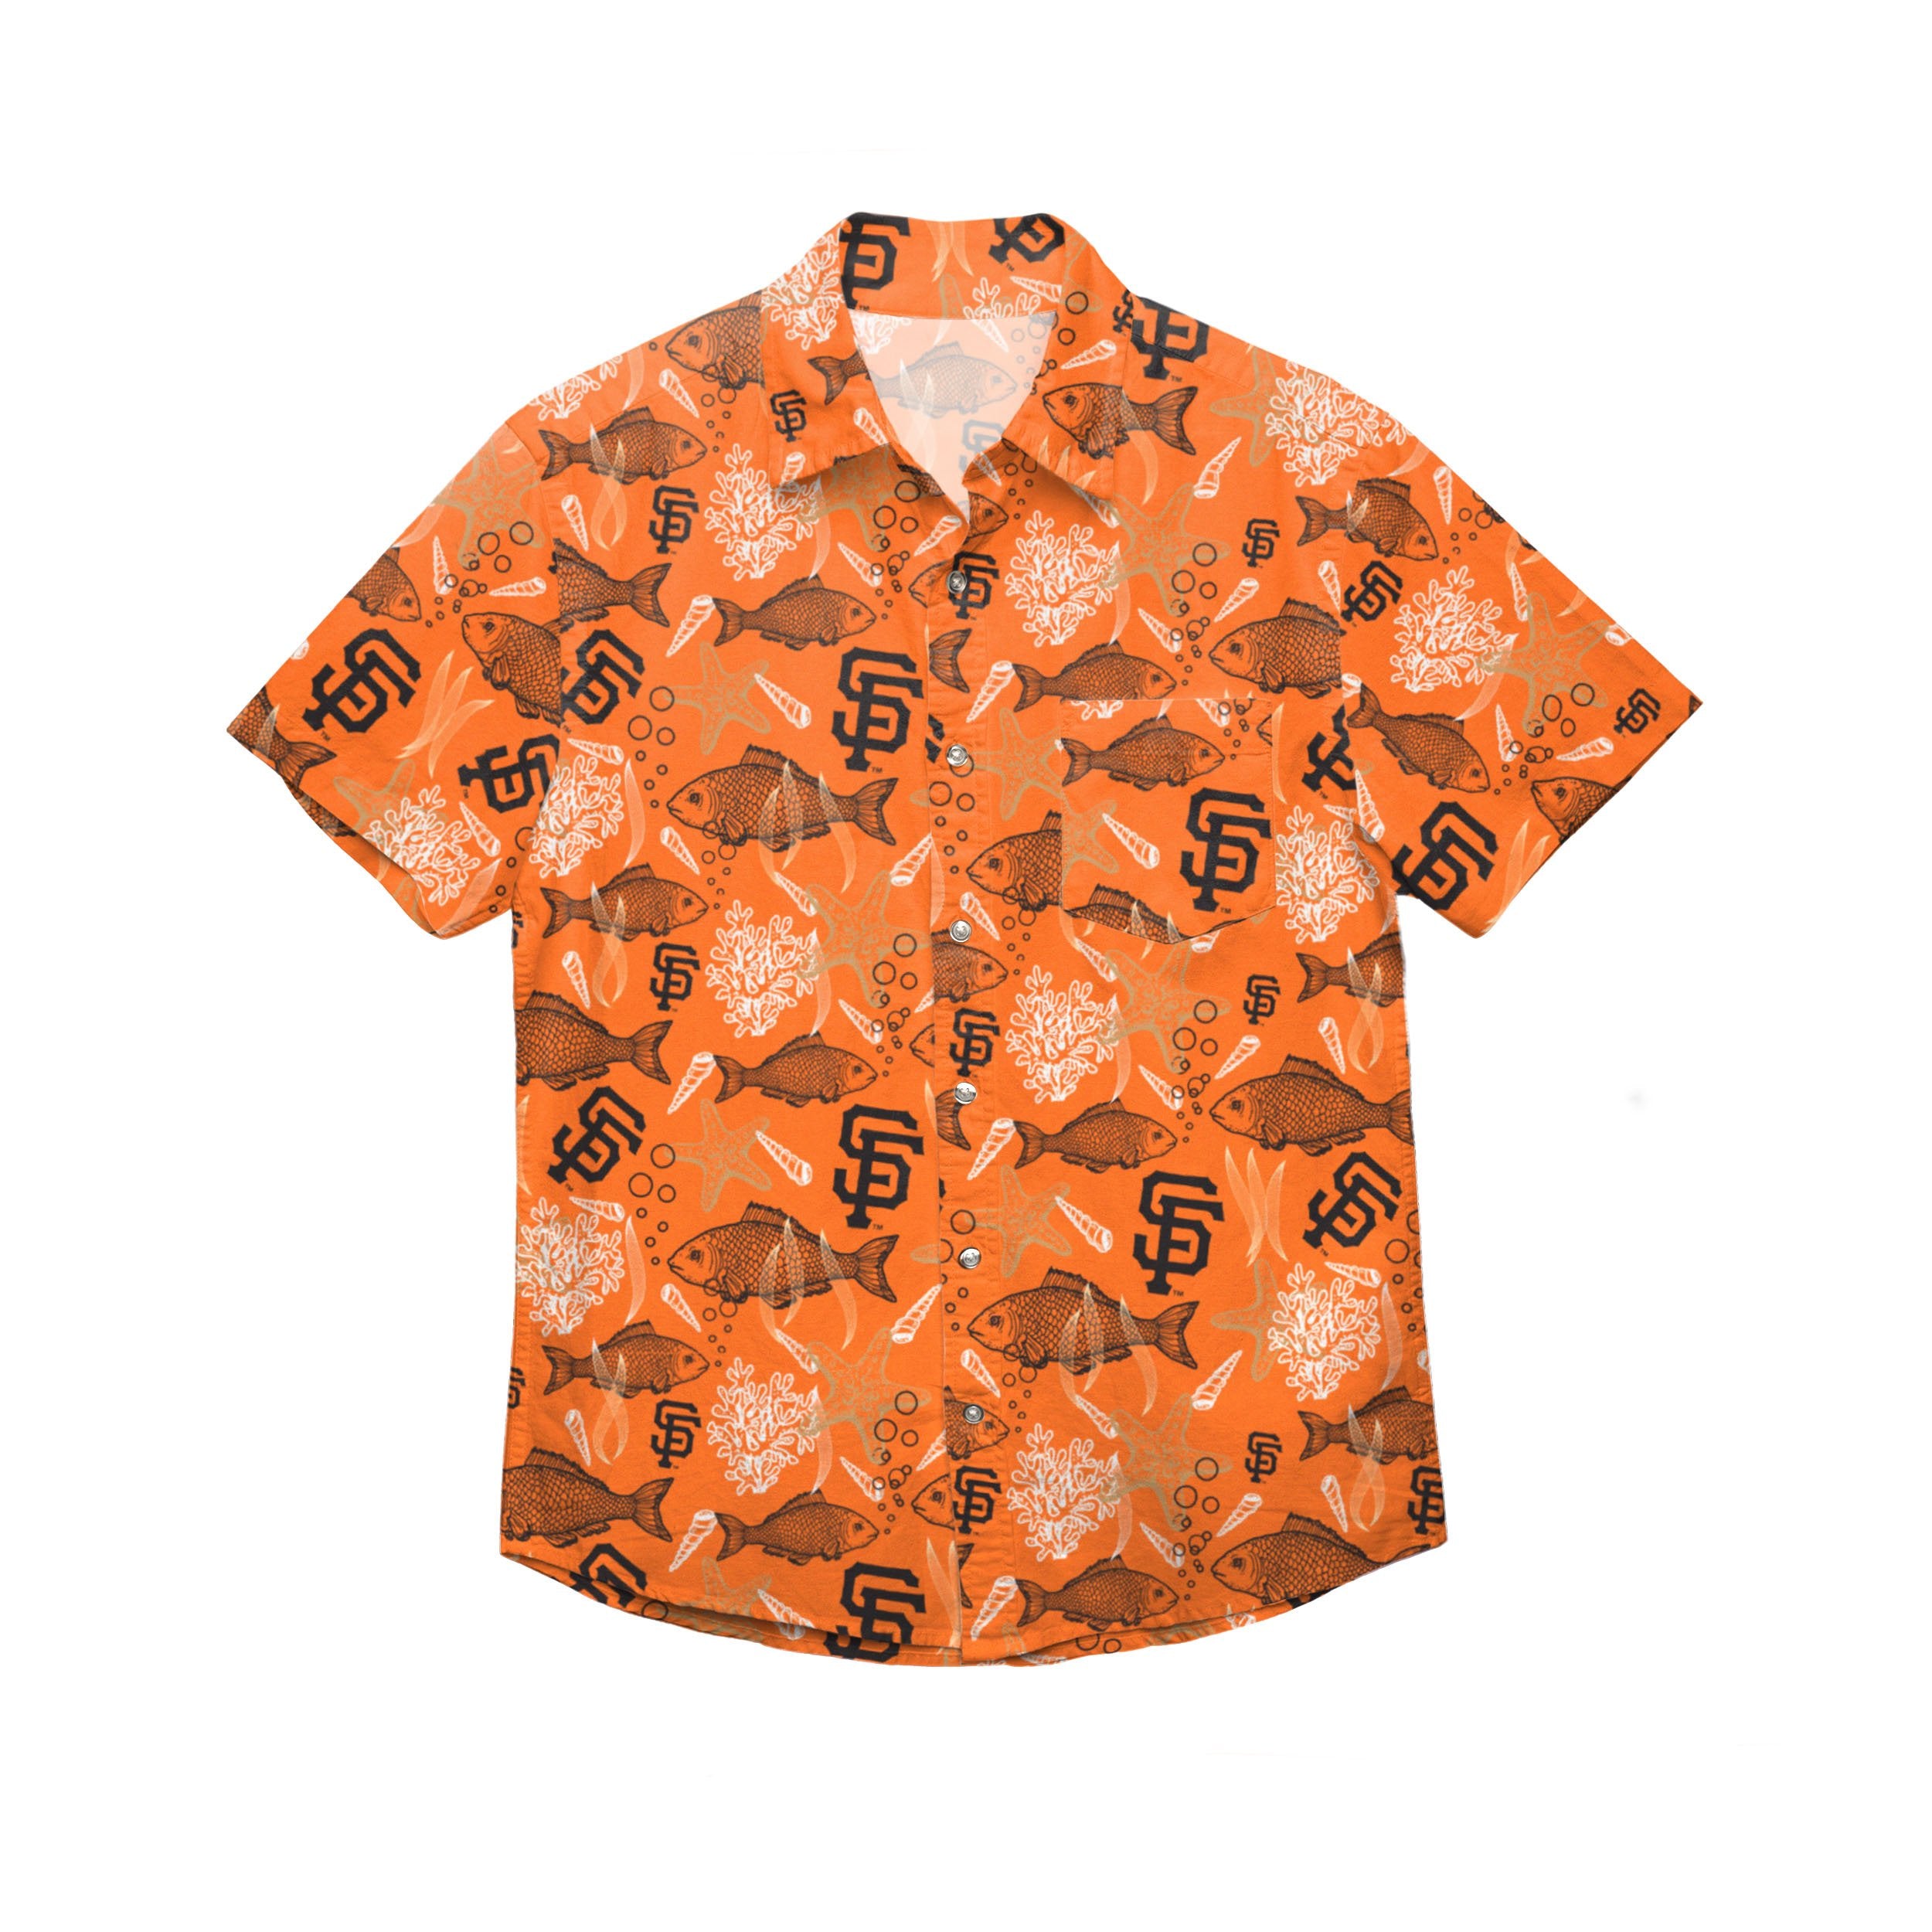 Sf Giants Hawaiian Shirt San Francisco Giants Mlb Unique Custom Hawaiian  Shirts - Upfamilie Gifts Store